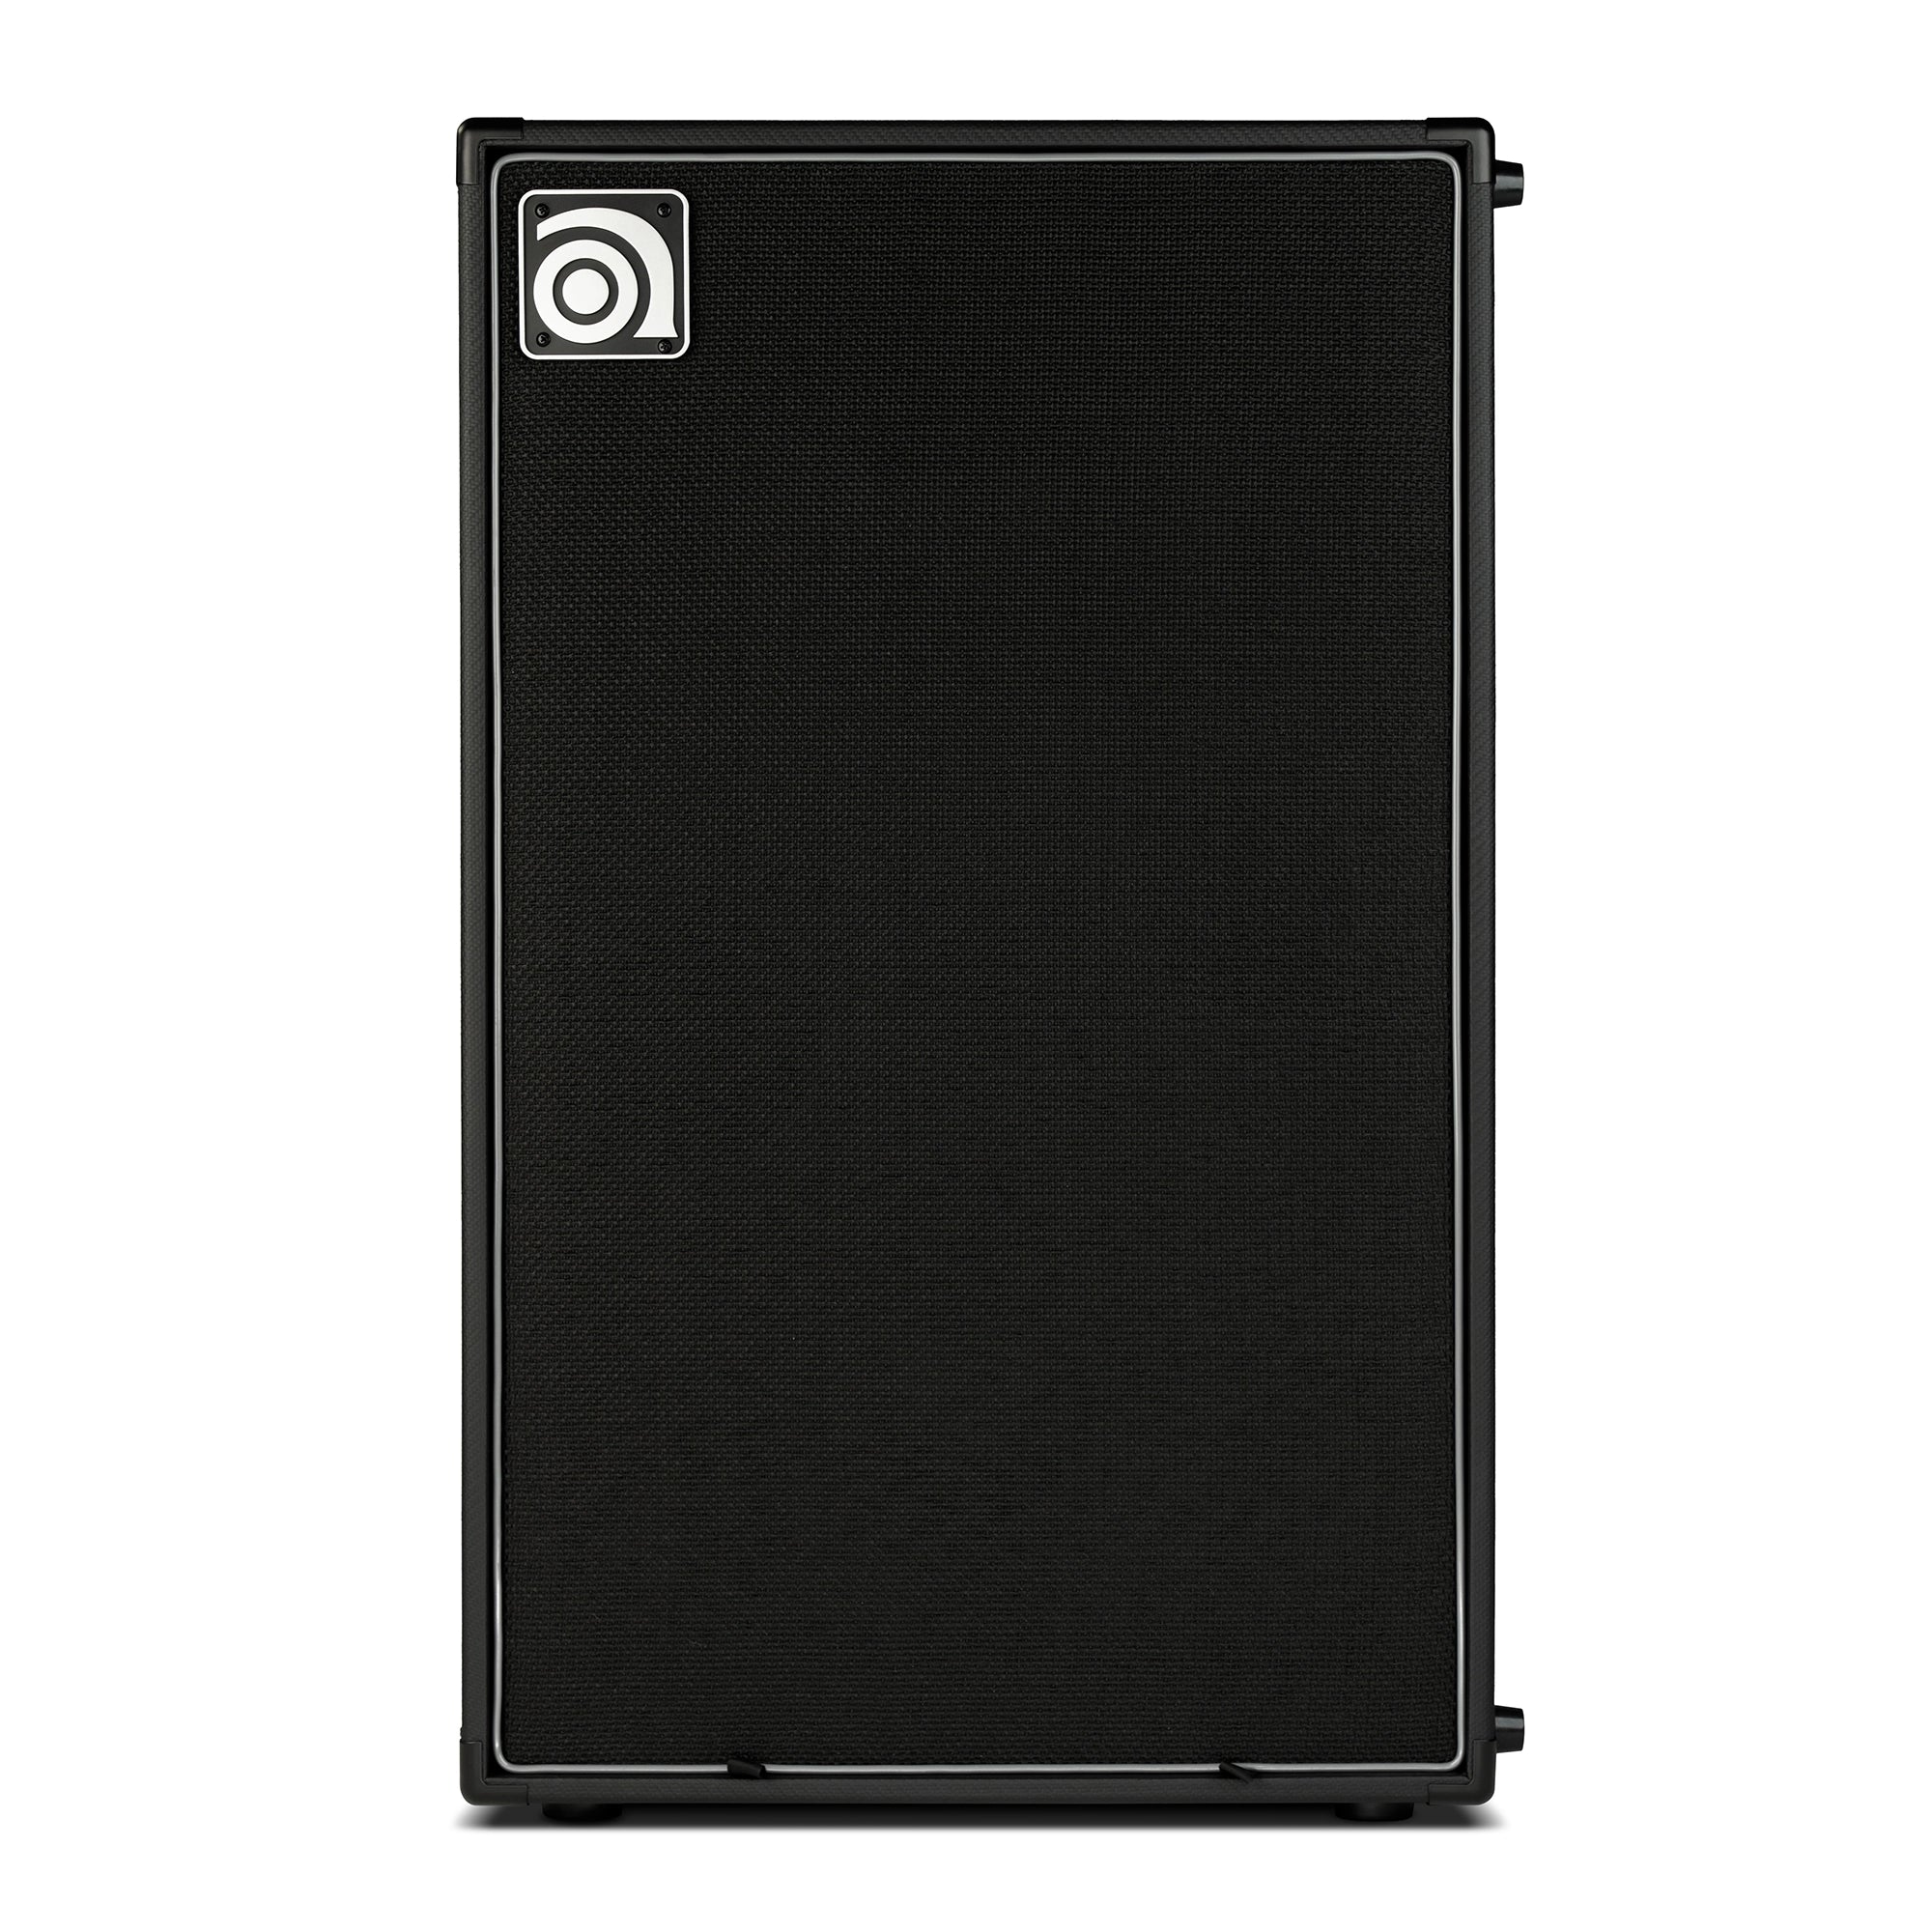 Ampeg Venture VB-212 2 x 12-inch 500-Watt Bass Cabinet